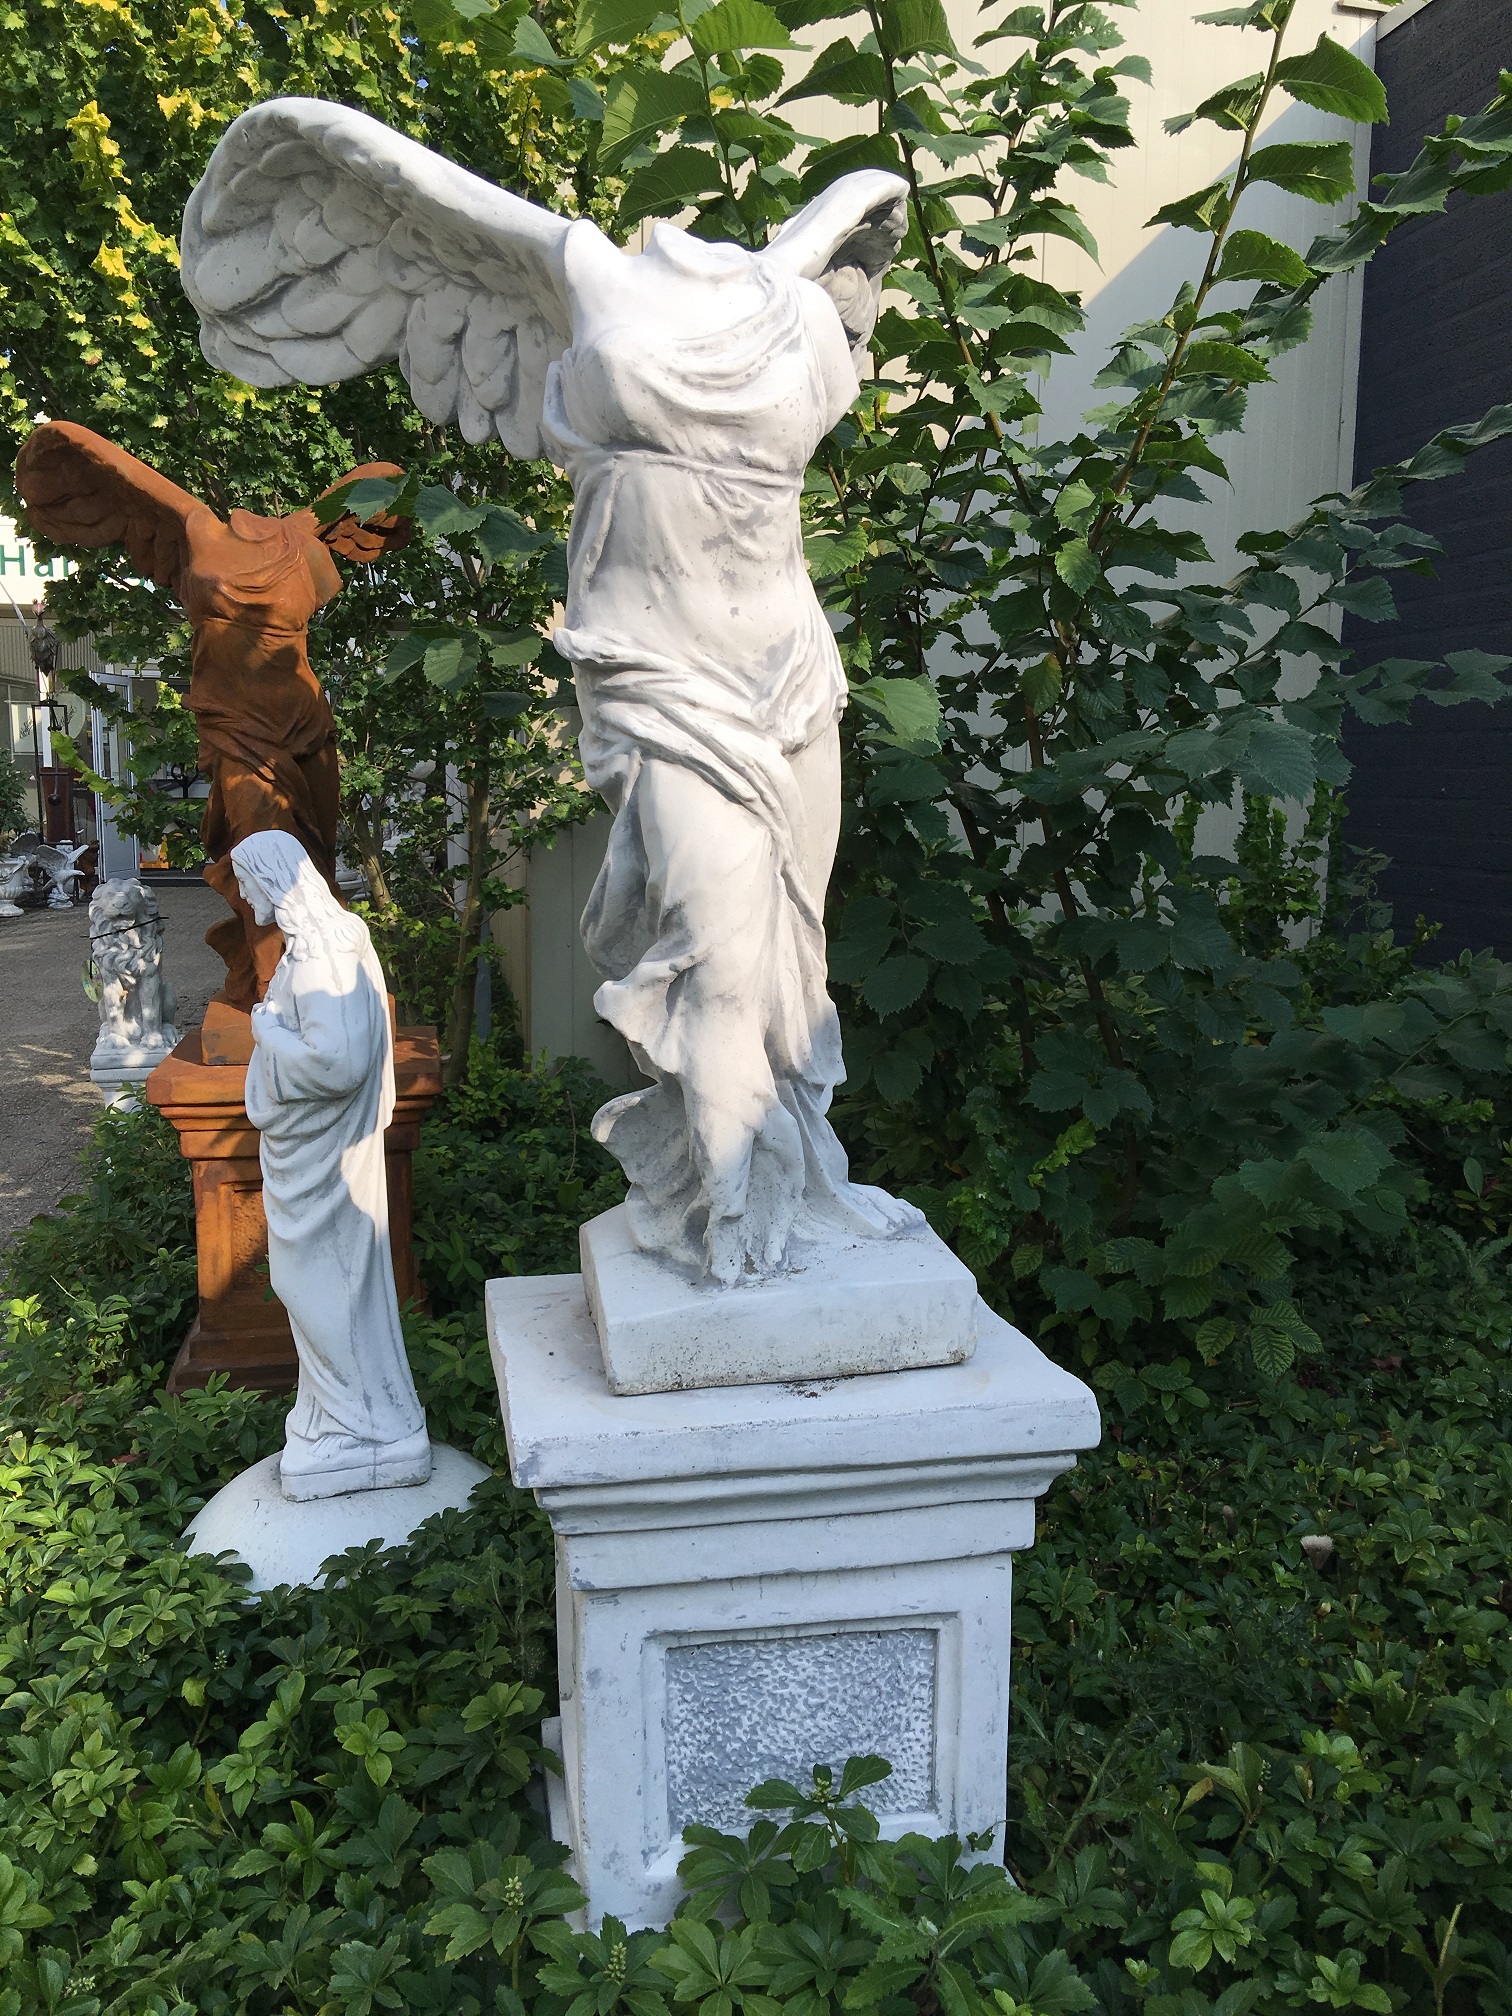 Schöne solide Engel Nikè Statue auf Sockel, einzigartig!